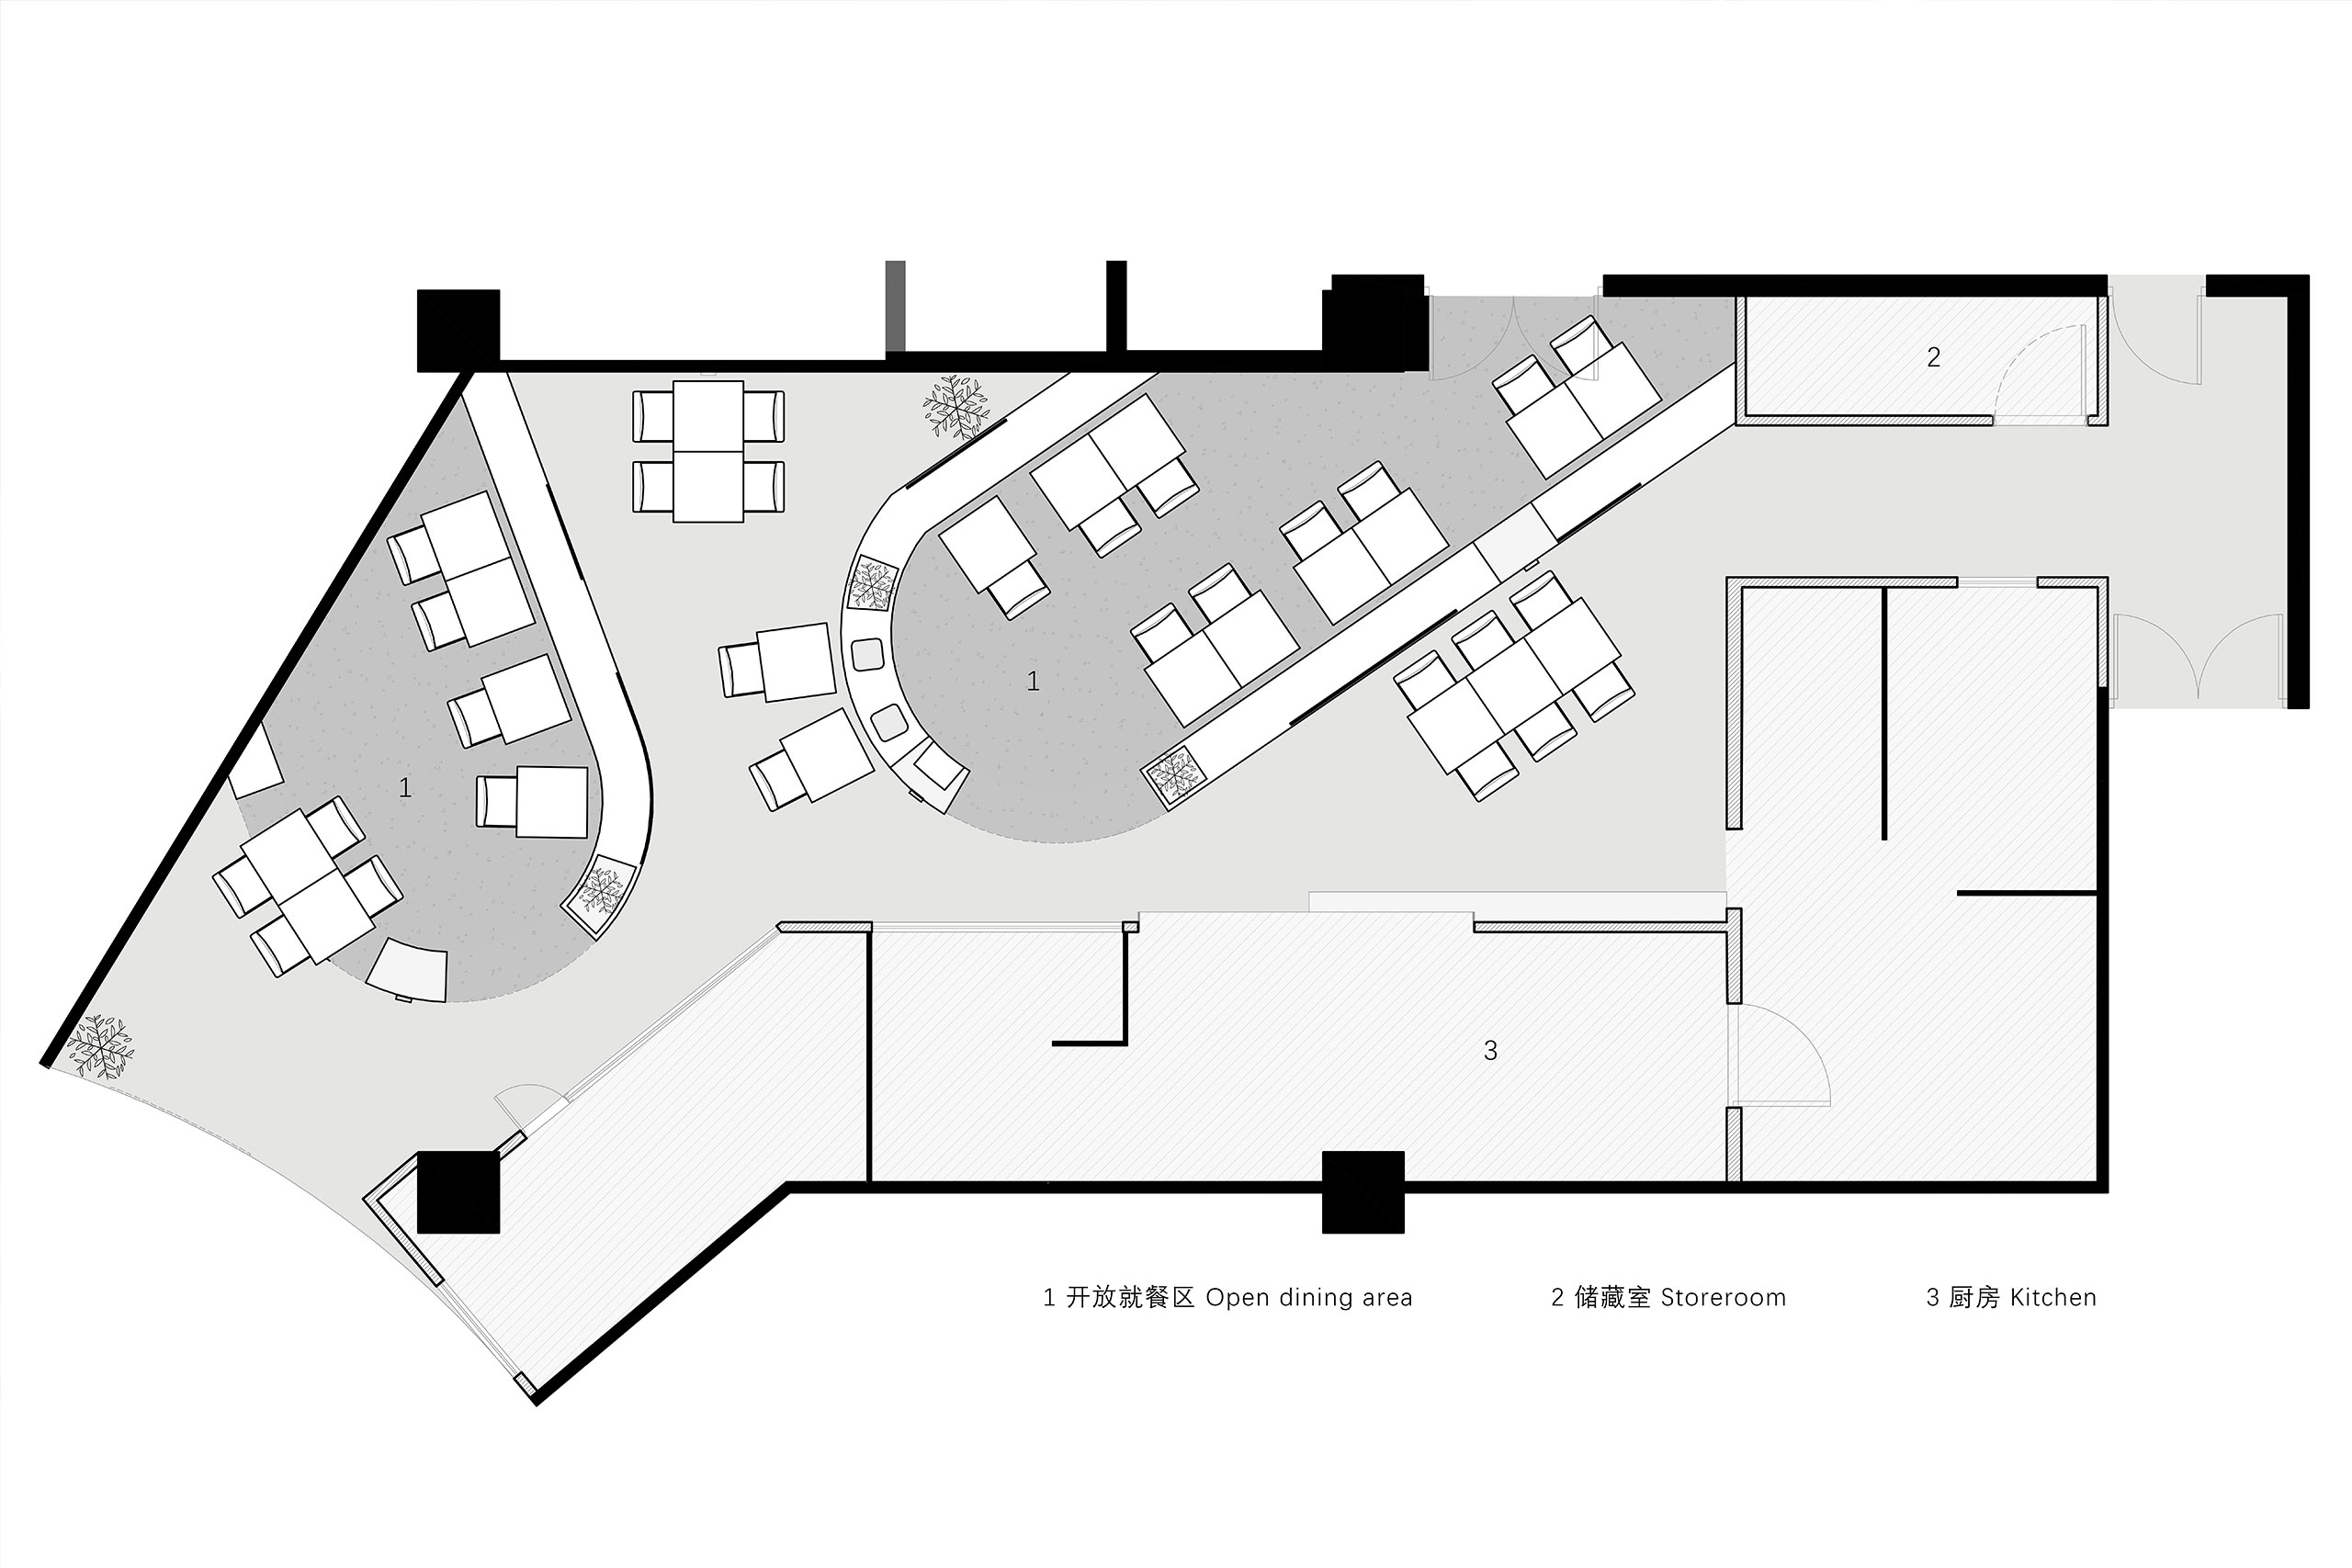 63 立面图 elevation view项目信息项目名称:登乐越南粉百联店设计